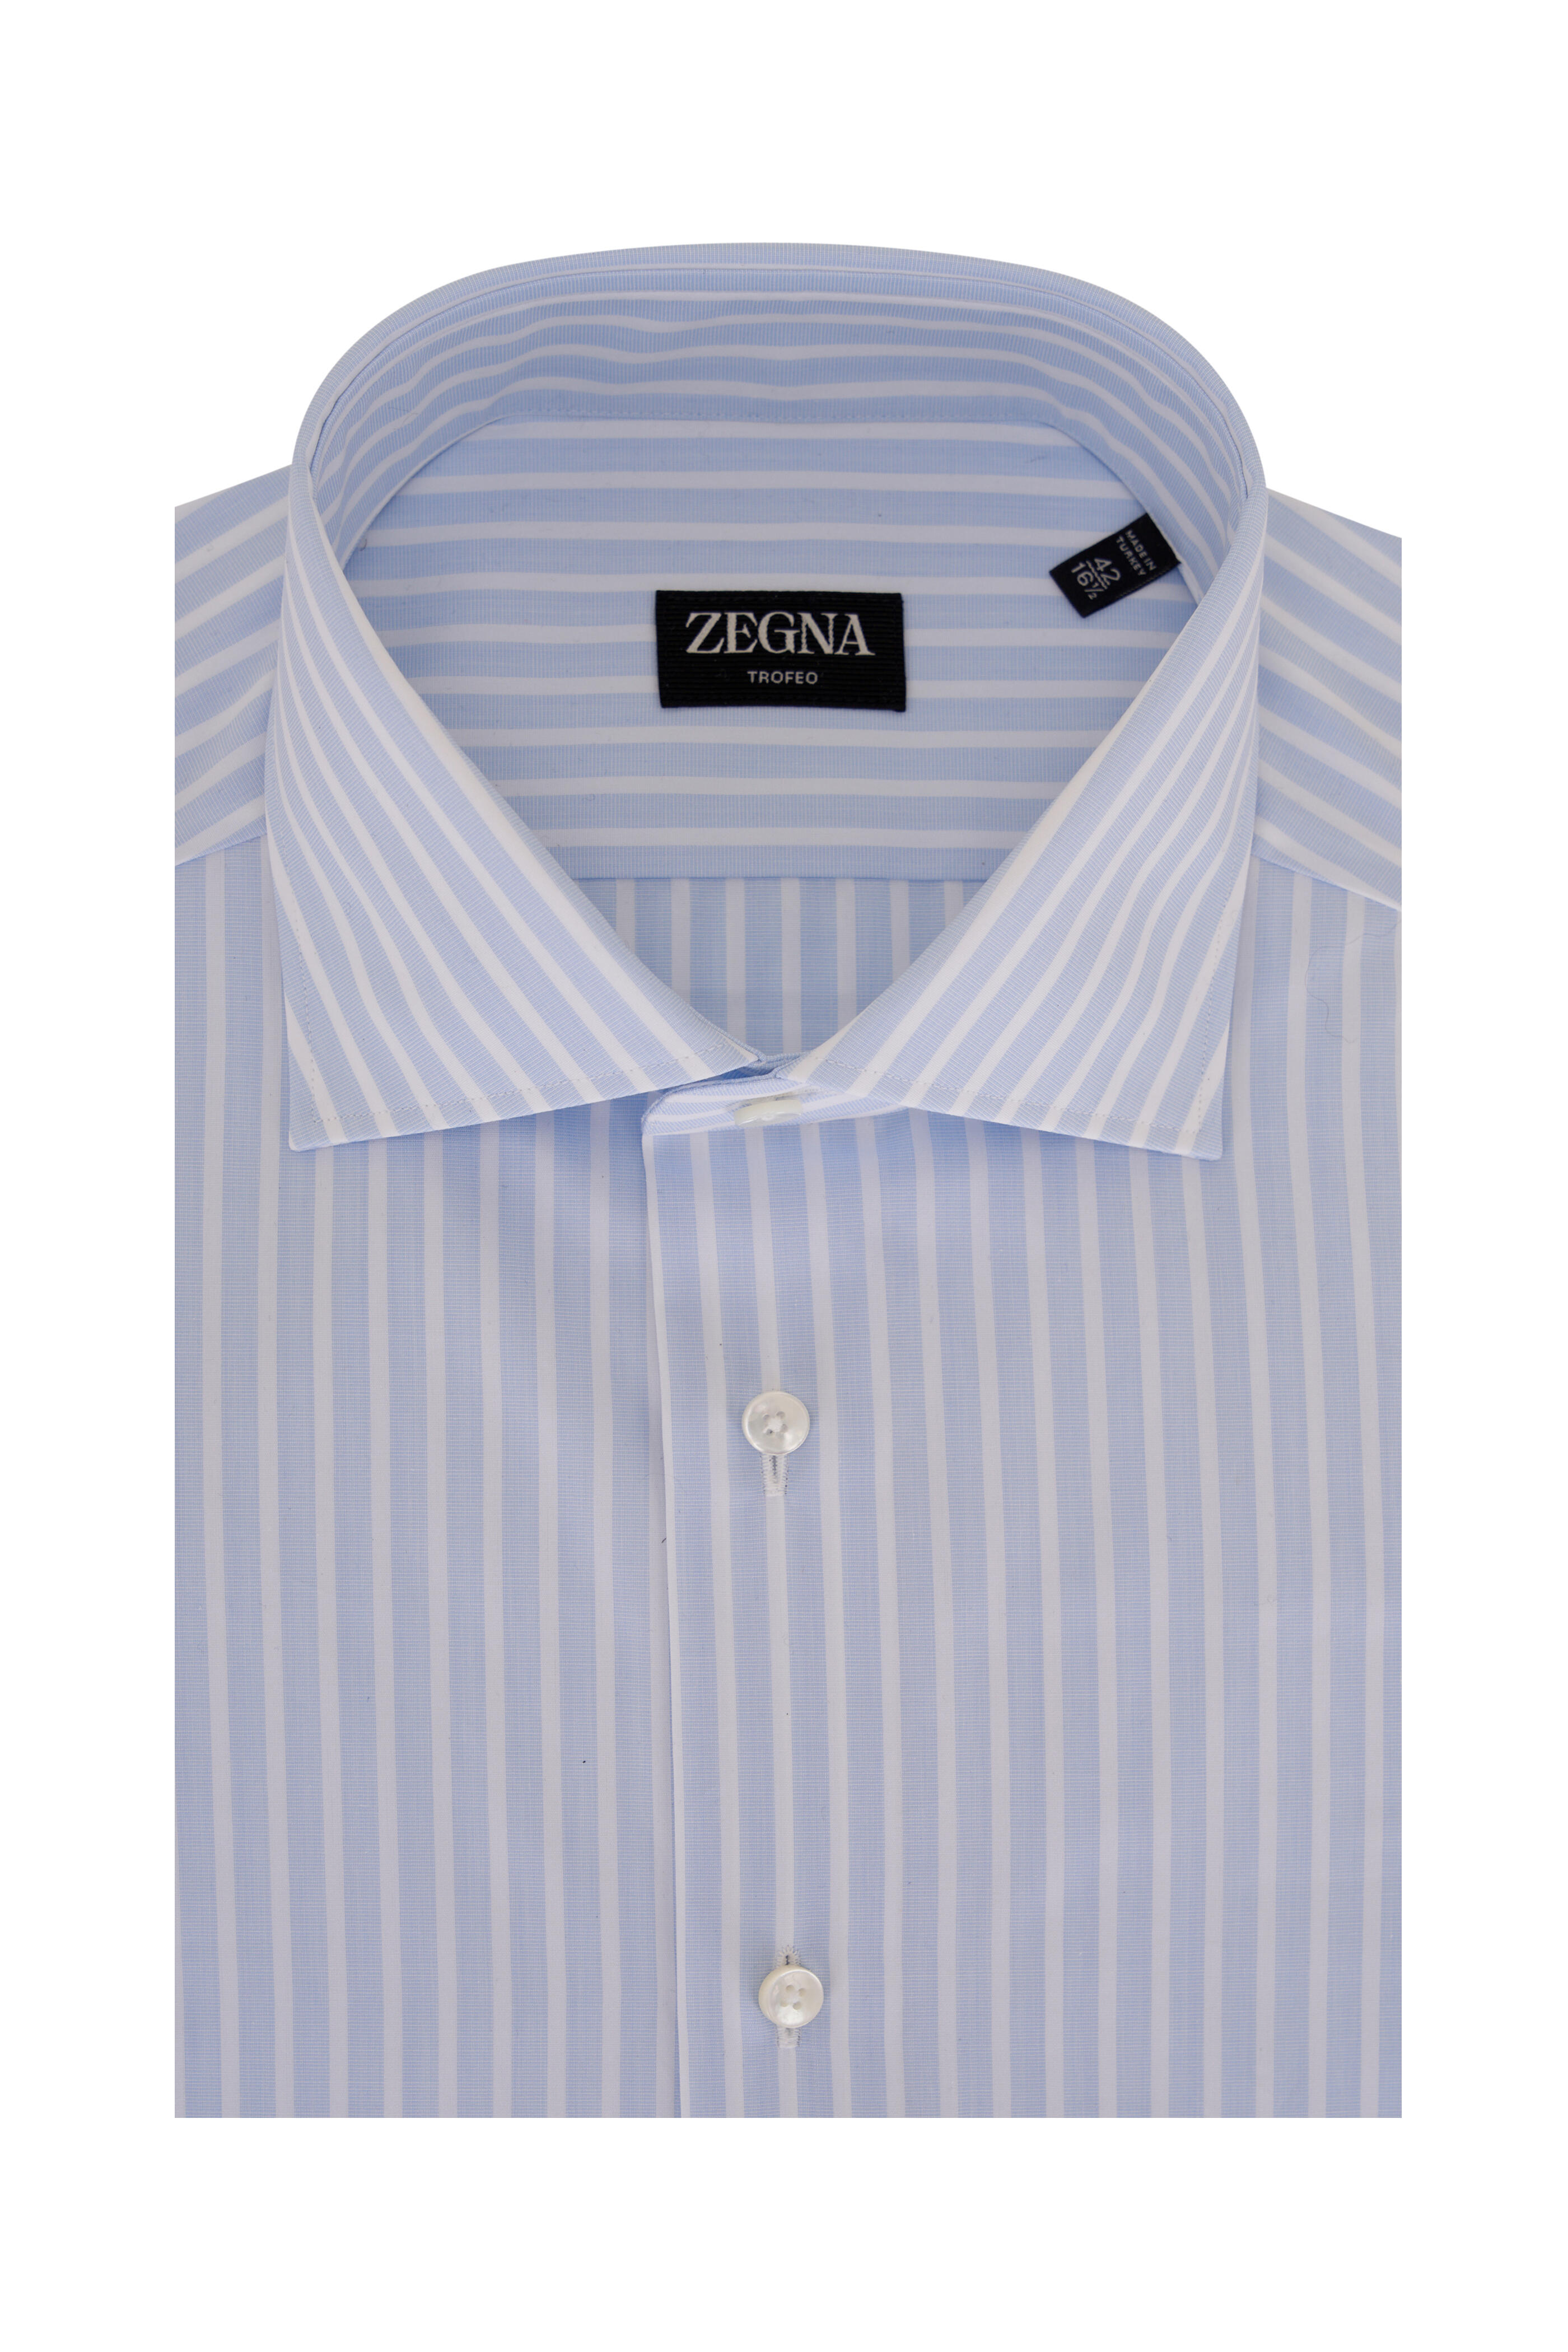 Zegna - Trofeo Blue & White Stripe Dress Shirt | Mitchell Stores